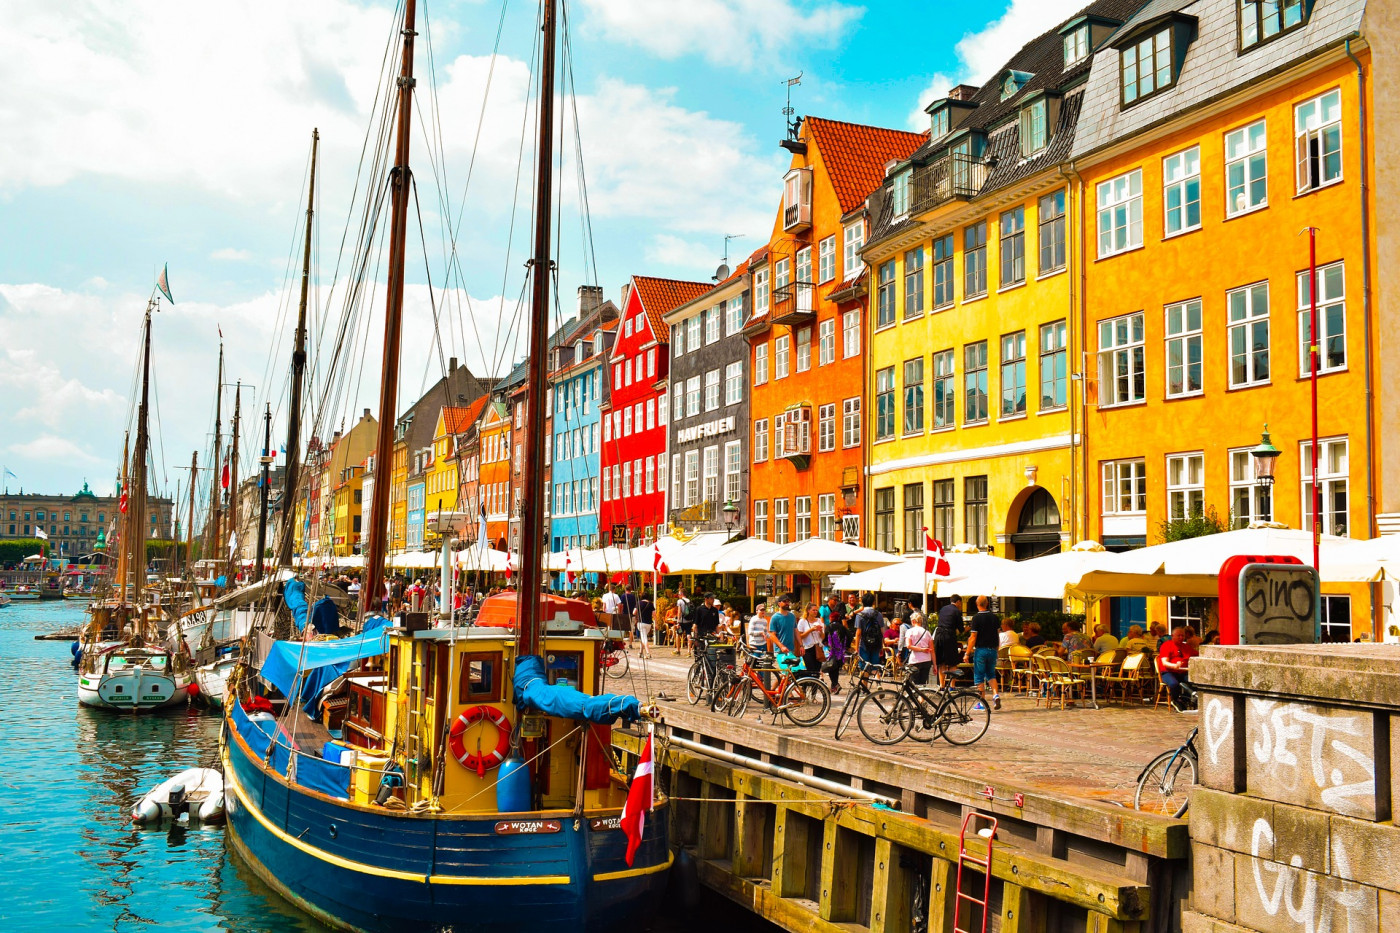 Casas coloridas à beira de um canal na Dinamarca